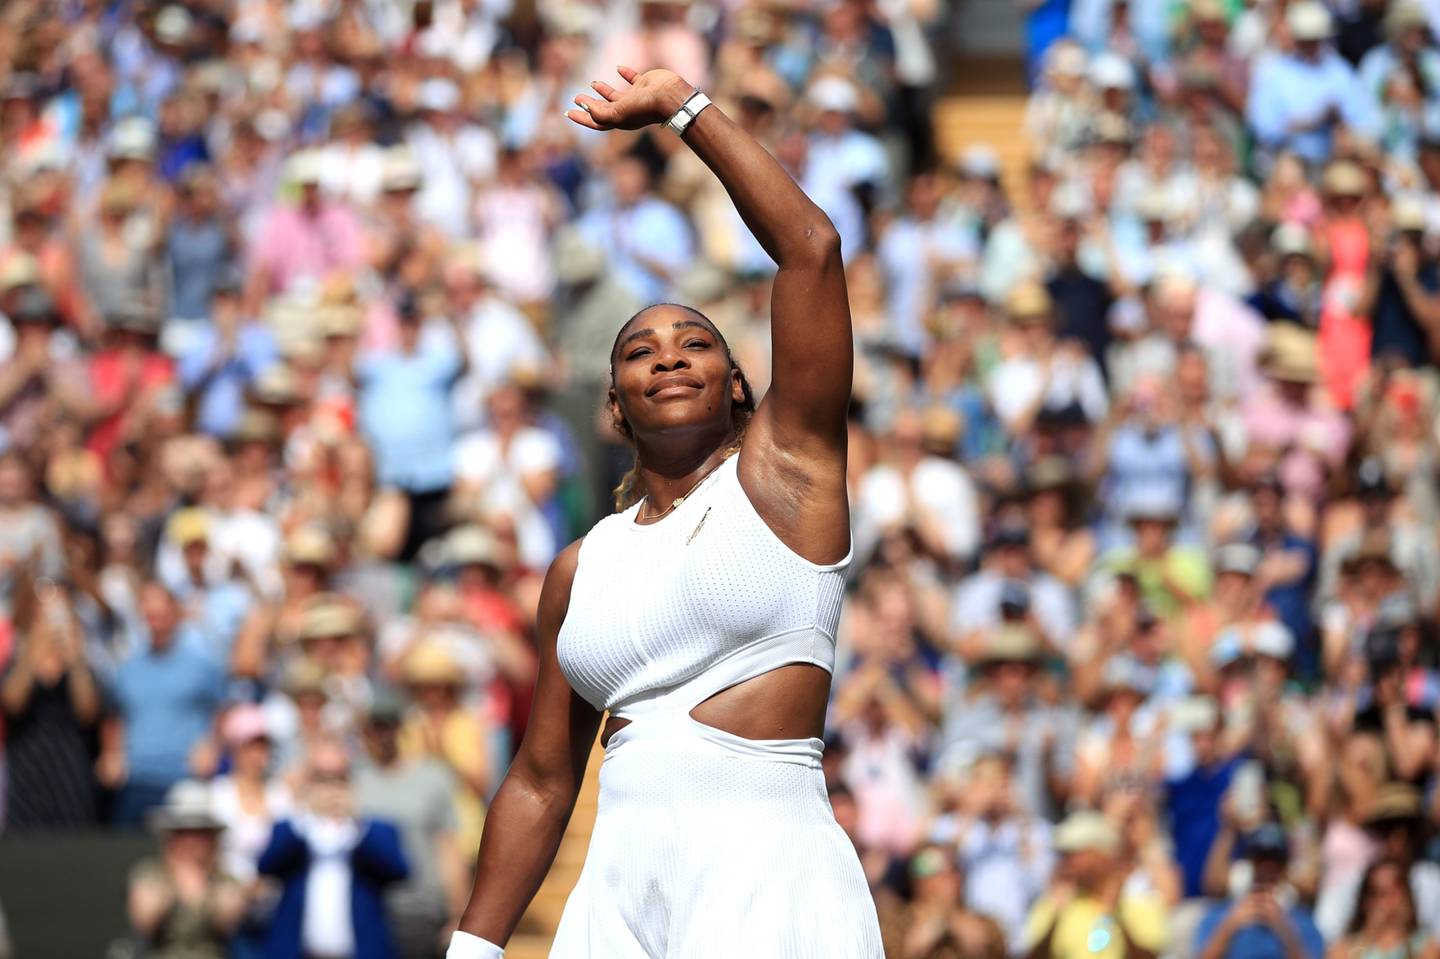 Serena Williamsc elebra la victoria en su partido de semifinales de individuales femenino contra Barbora Strycova, de la República Checa, durante el décimo día de The Championships - Wimbledon 2019 en el All England Lawn Tennis and Croquet Club el 11 de julio de 2019 en Londres, Inglaterra.